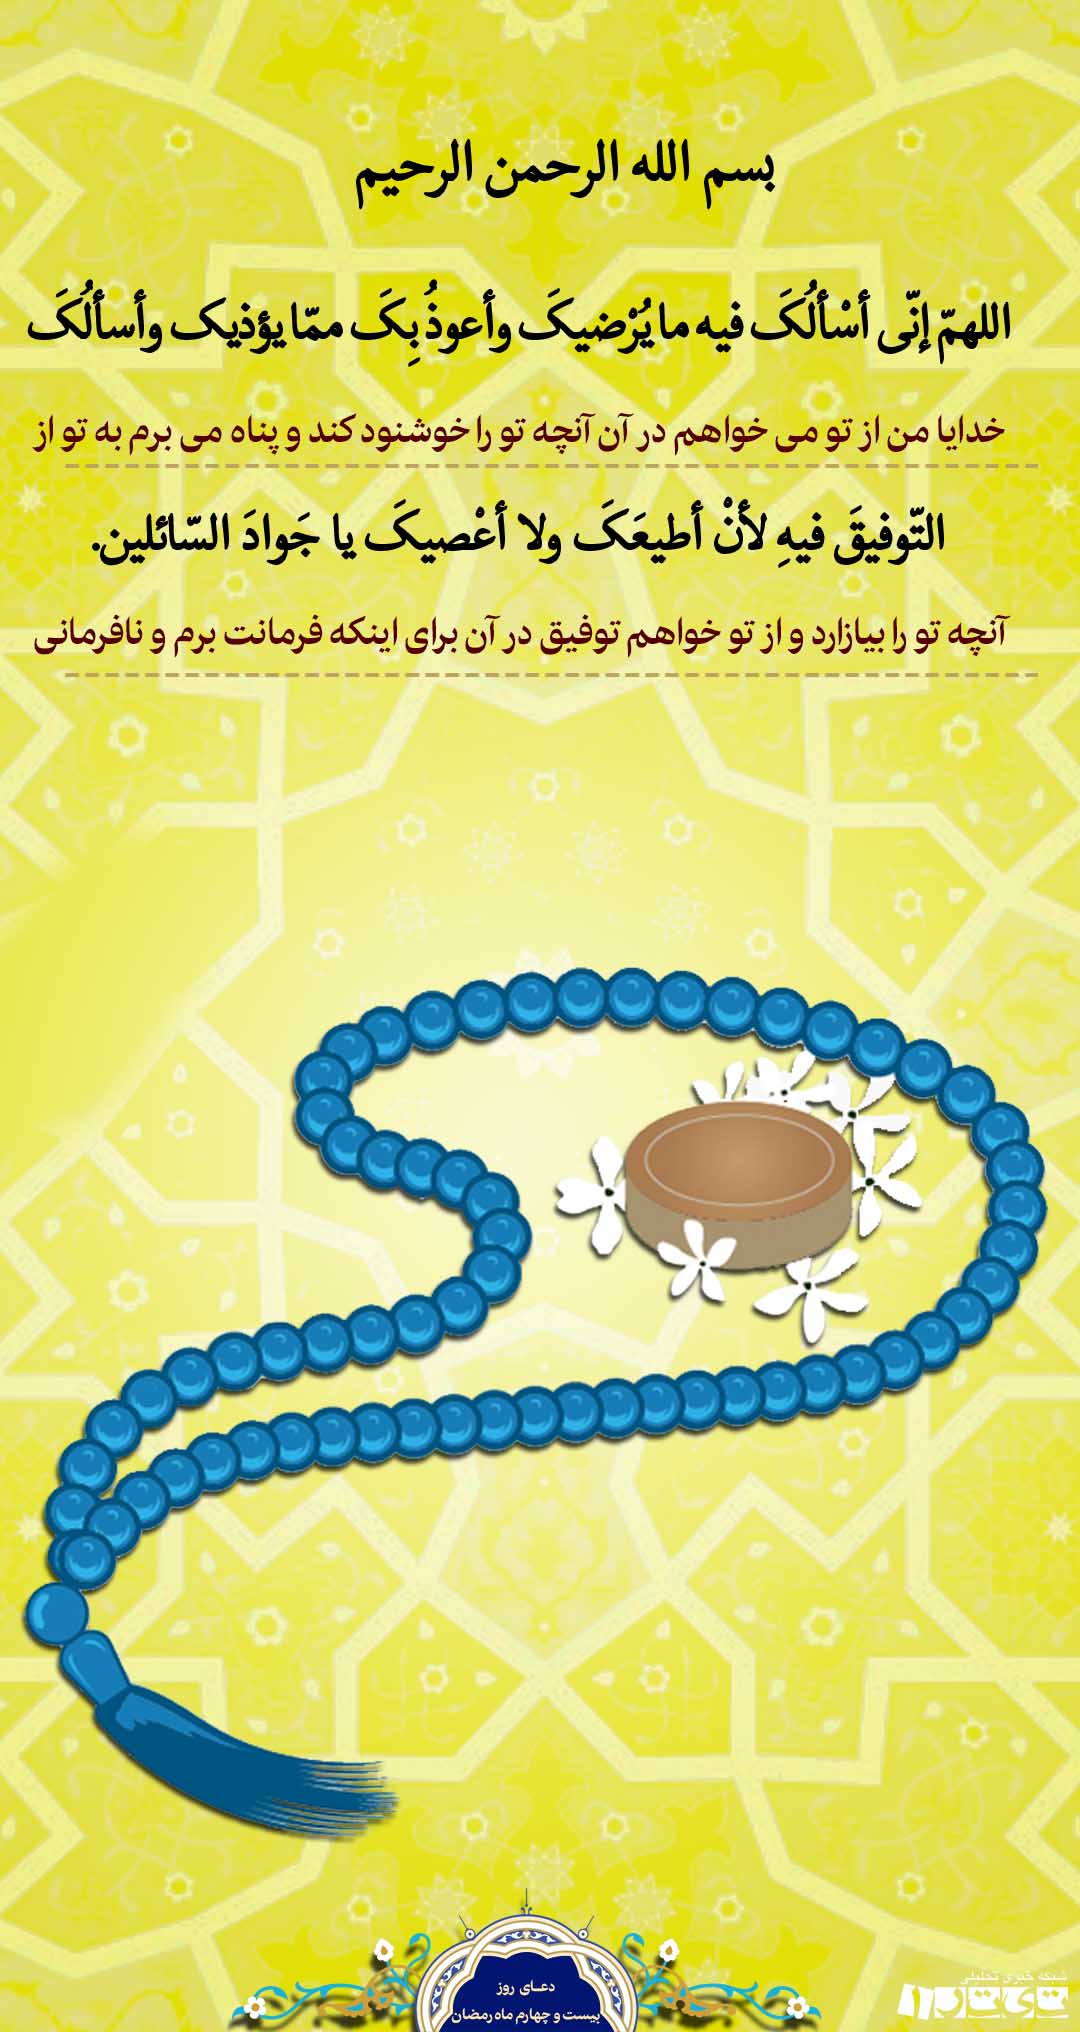 دعای روز بیست وچهارم ماه رمضان + پوستر